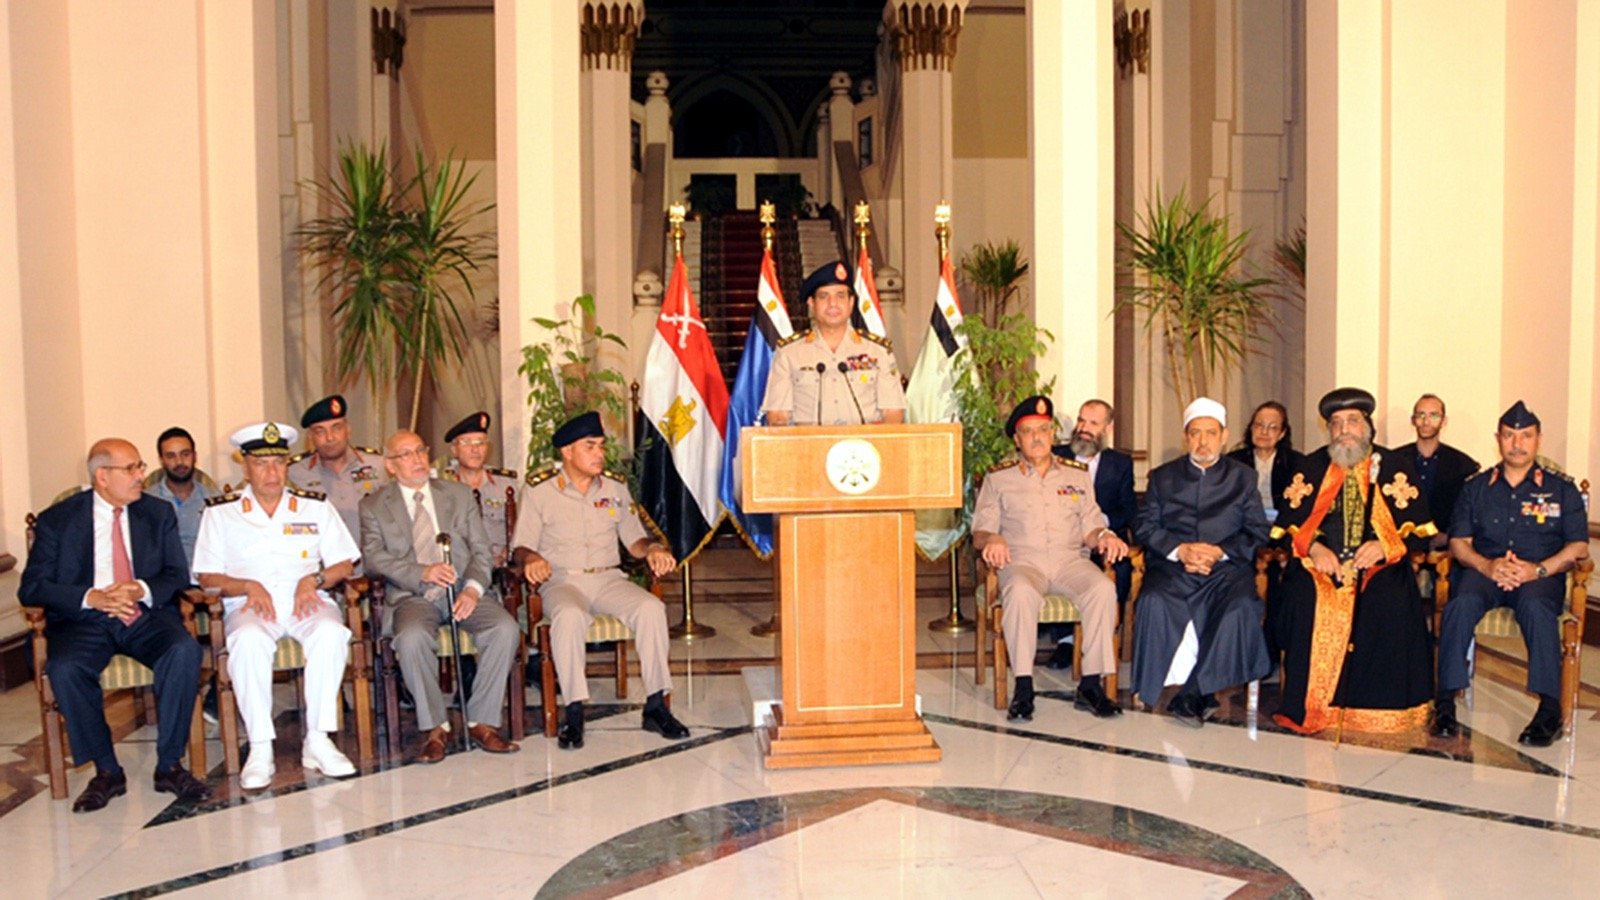 Sisi’nin 2013 yılında gerçekleştirdiği darbeden sonra darbe bildirisini okuduğu anlar (AP)